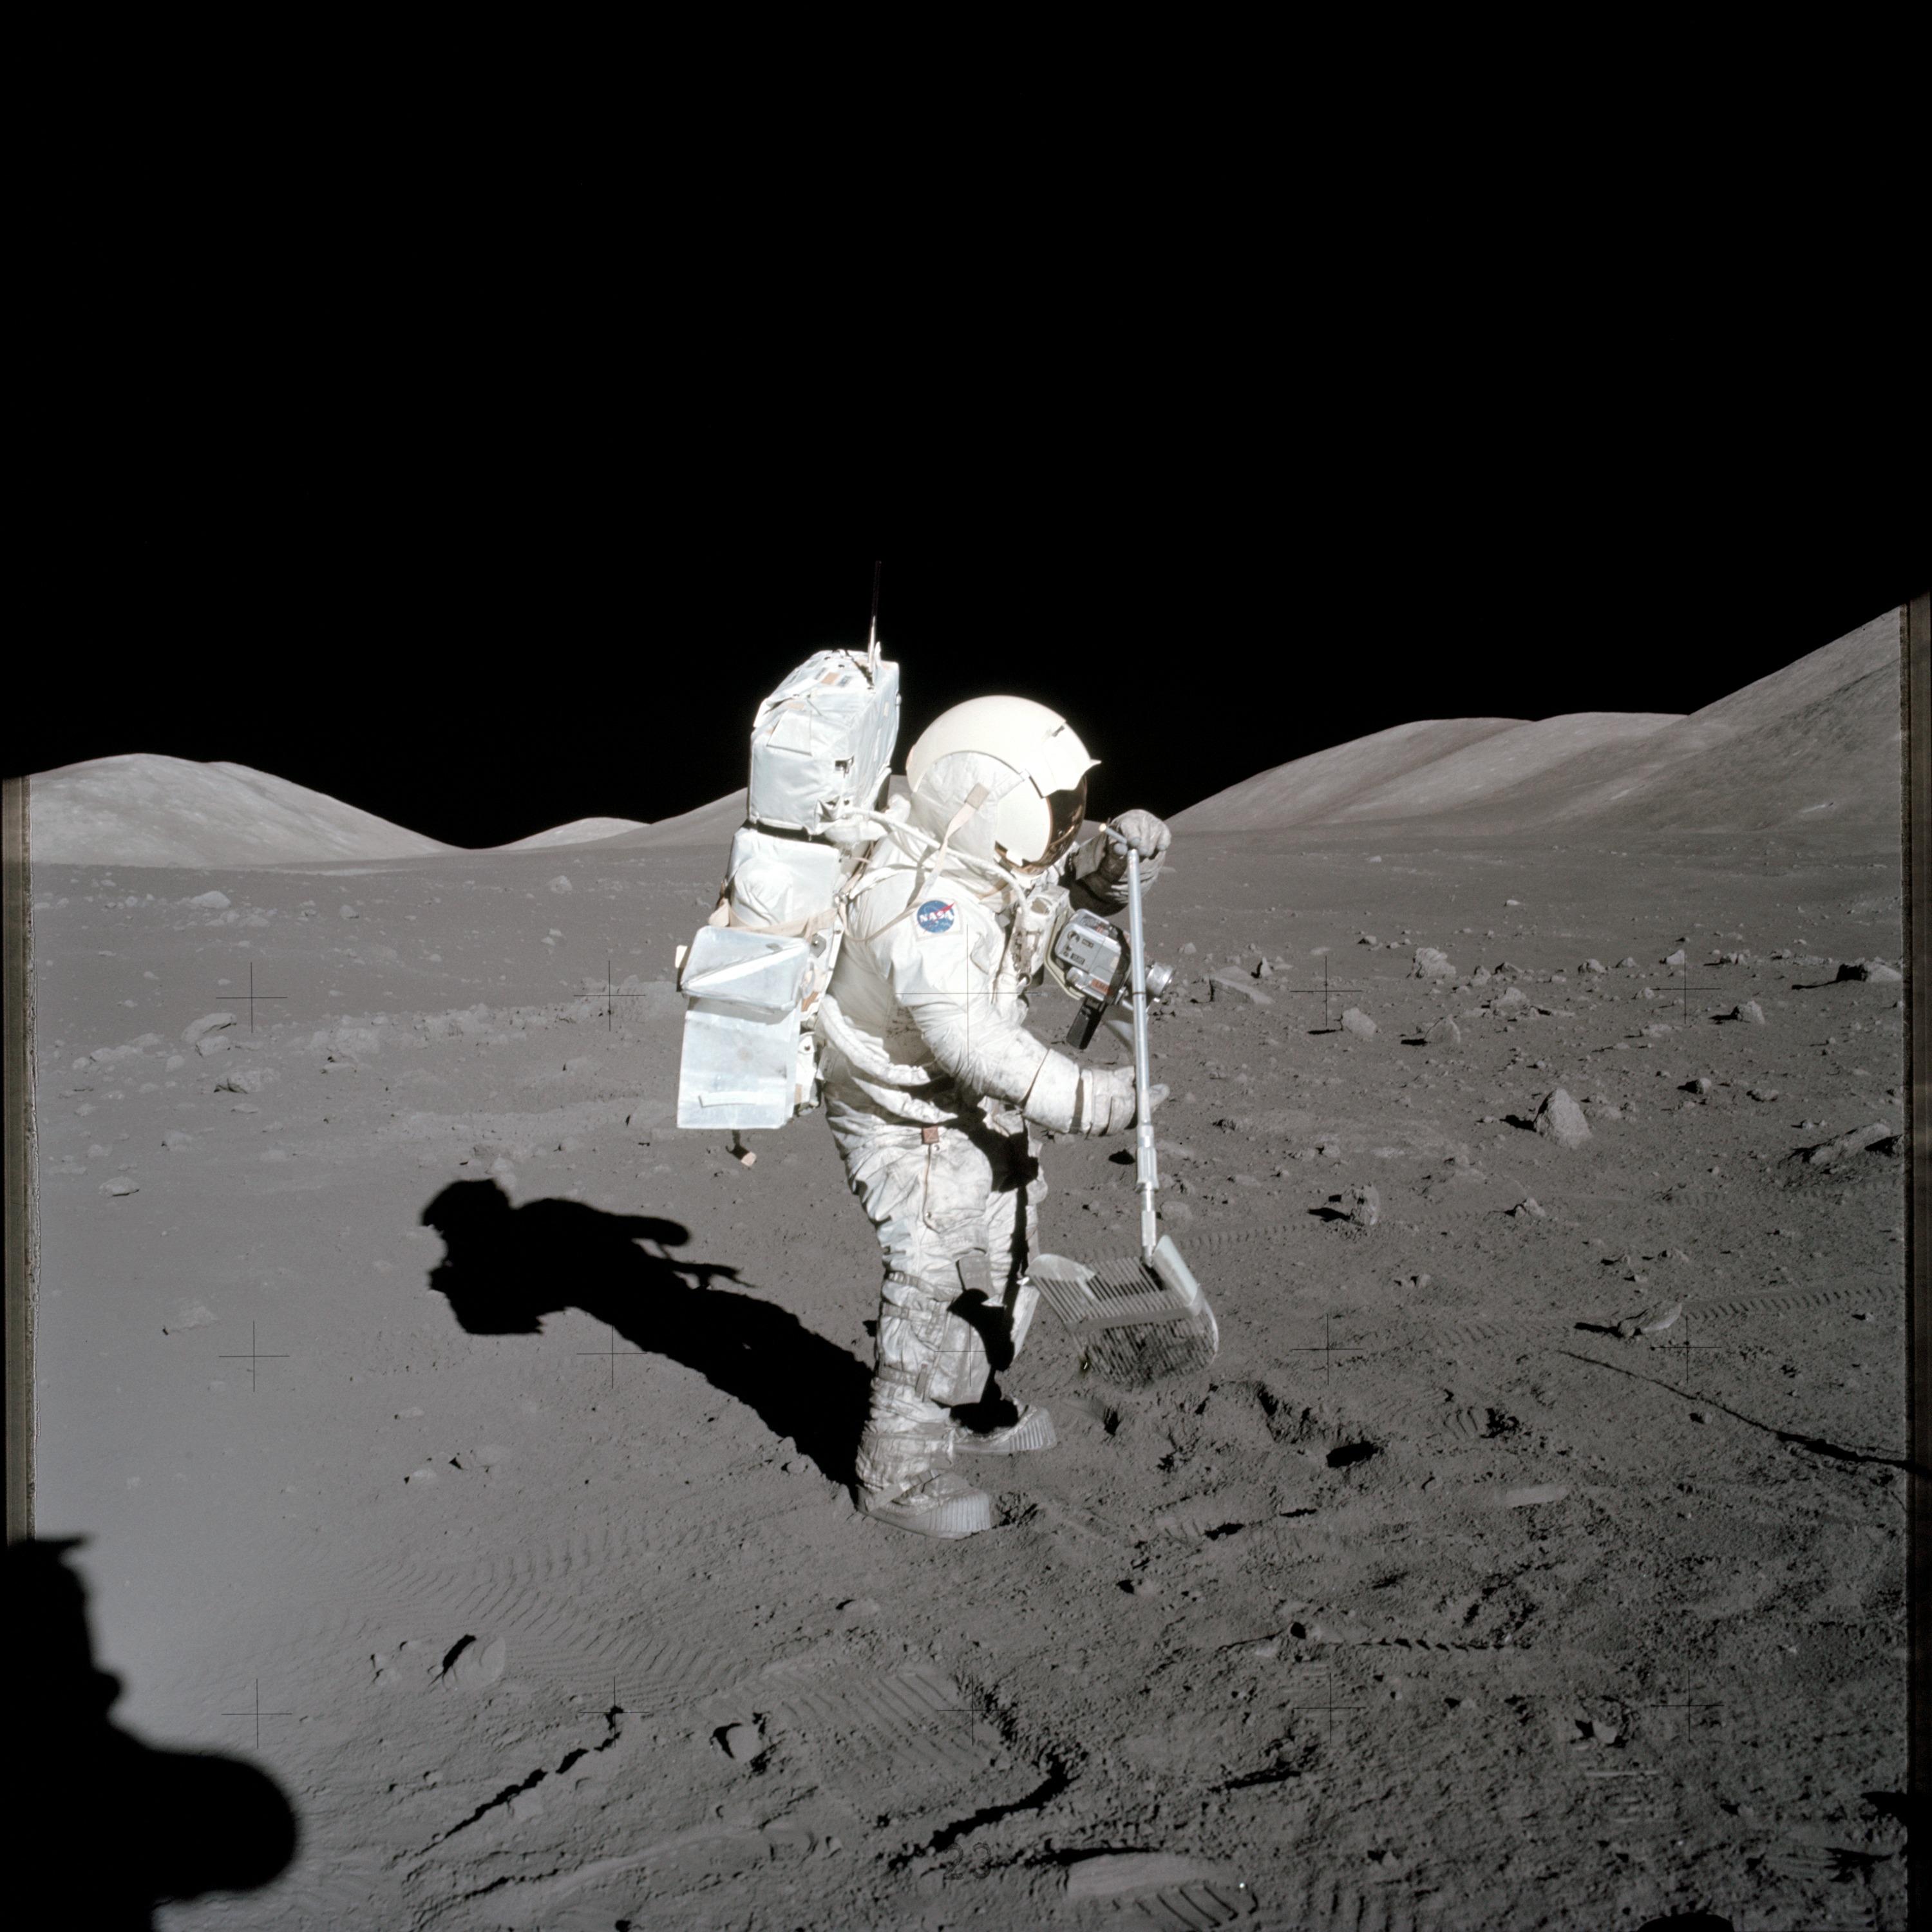 月のサンプルを採取するHarrison Schmitt宇宙飛行士